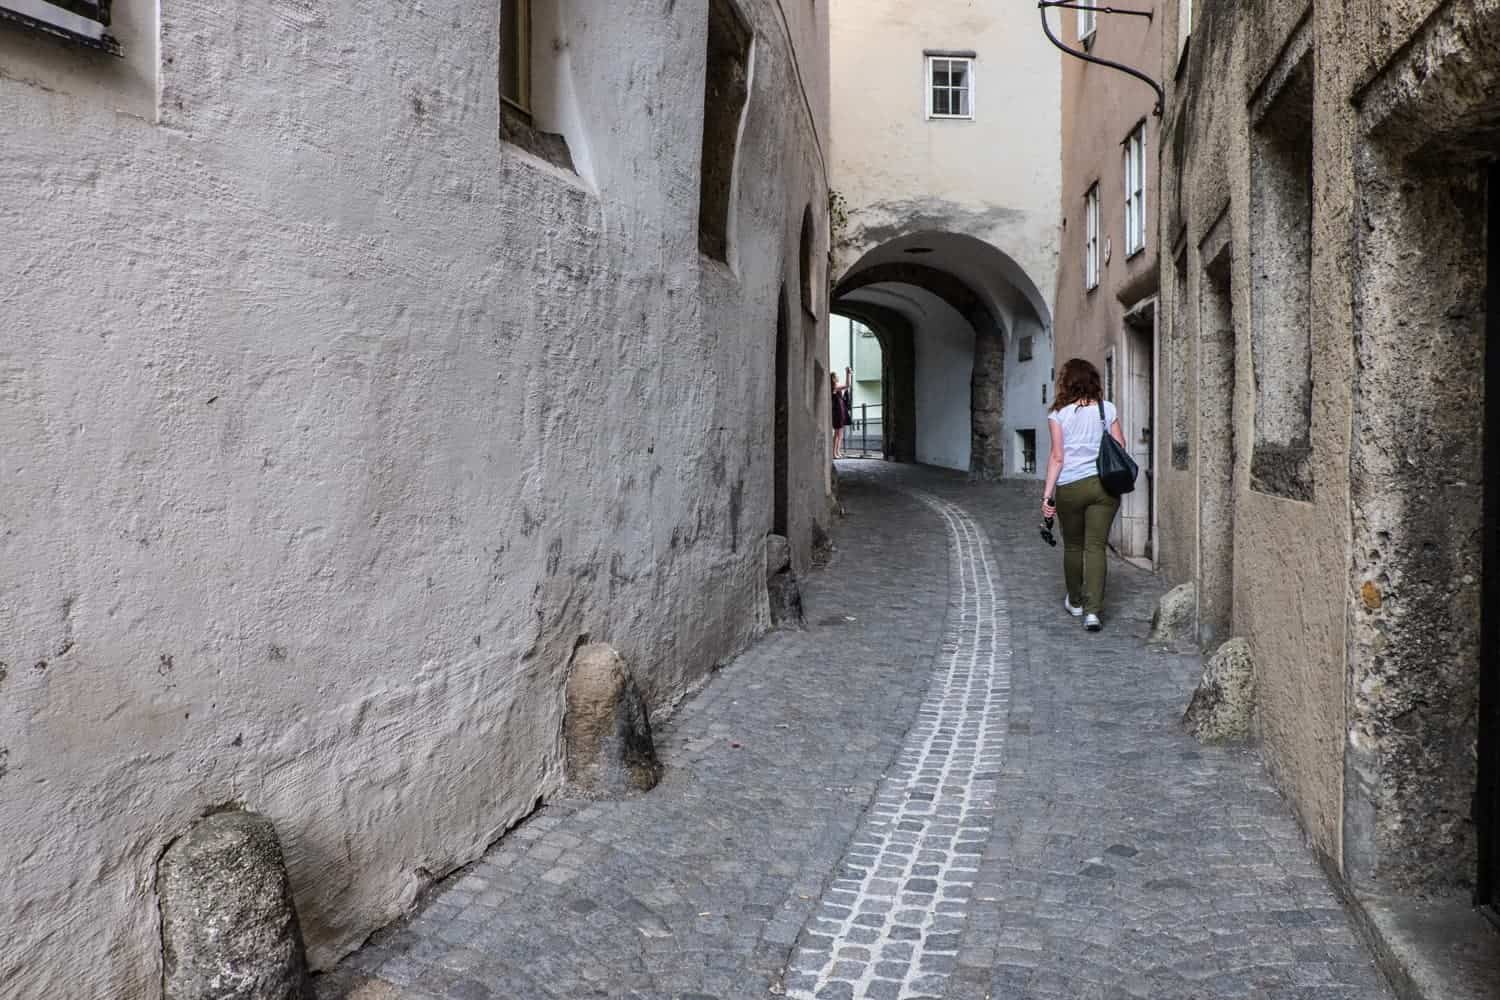 Steingasse, the oldest street in Salzburg, Austria